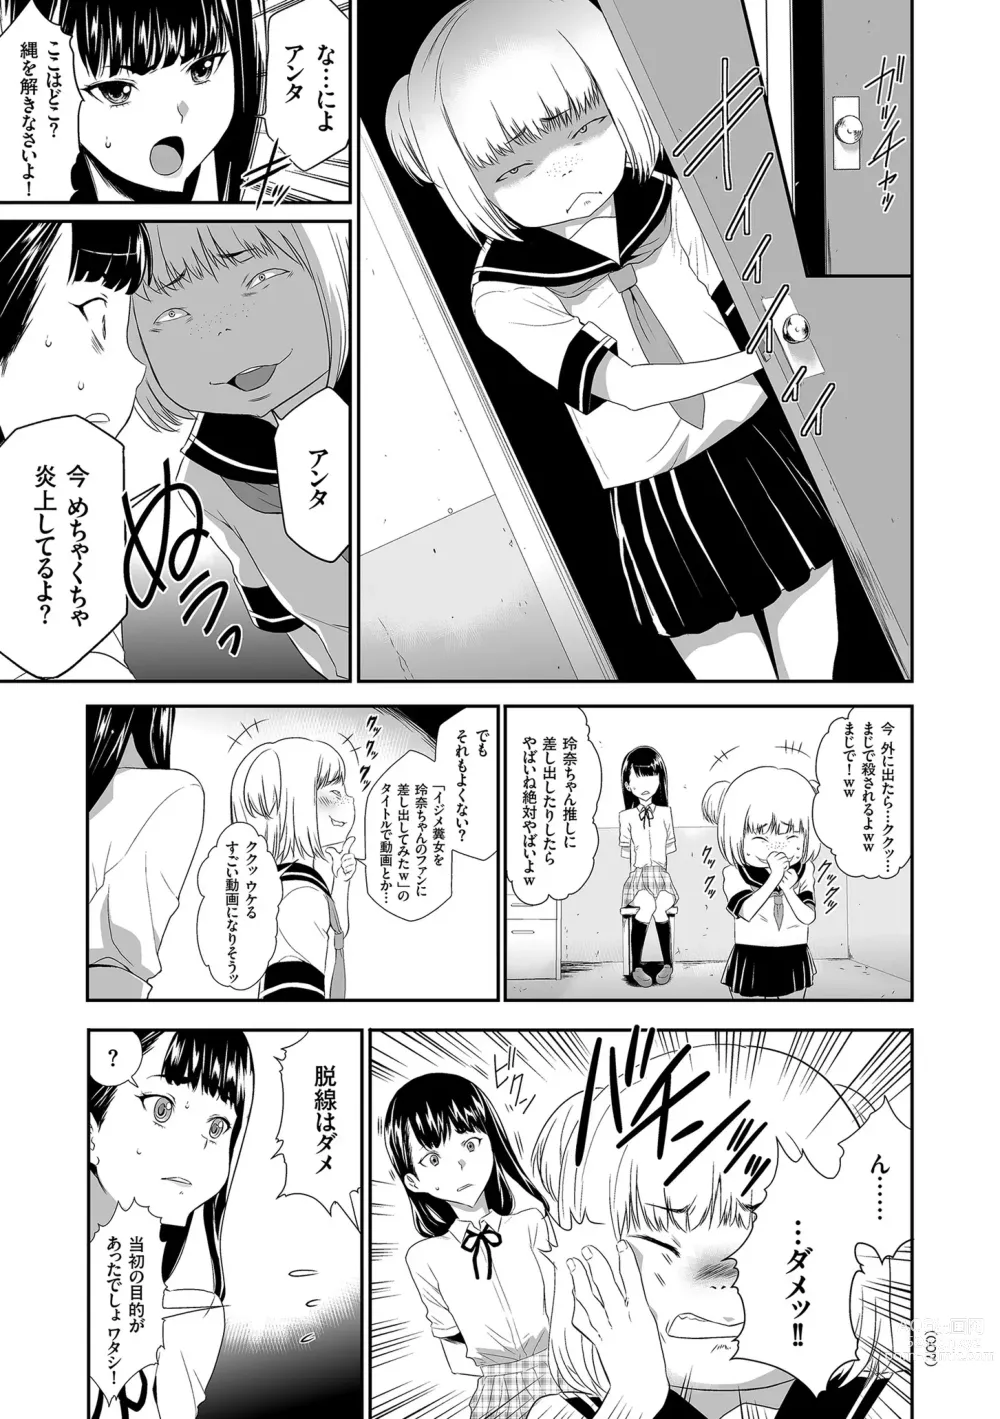 Page 7 of manga Idol Kankin Live!